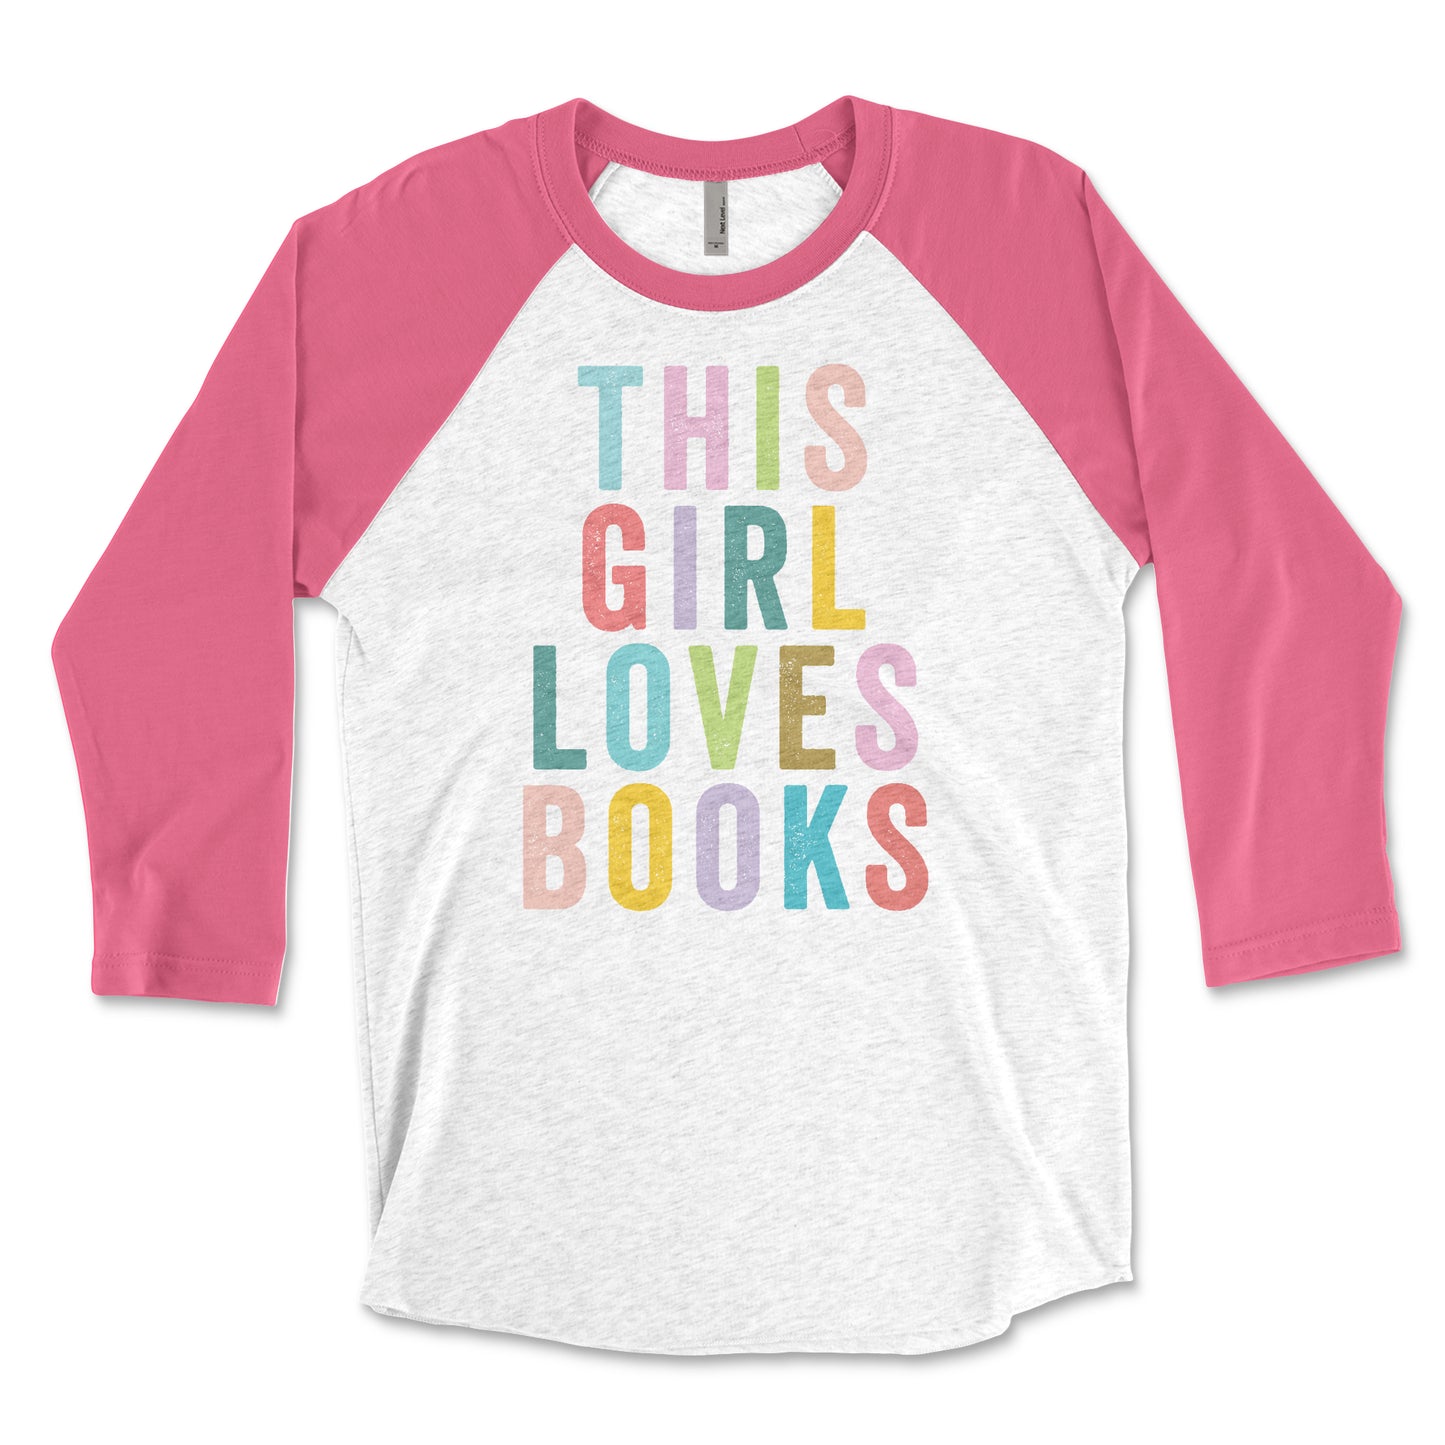 This Girl Loves Books 3/4 Sleeve Raglan T-shirt